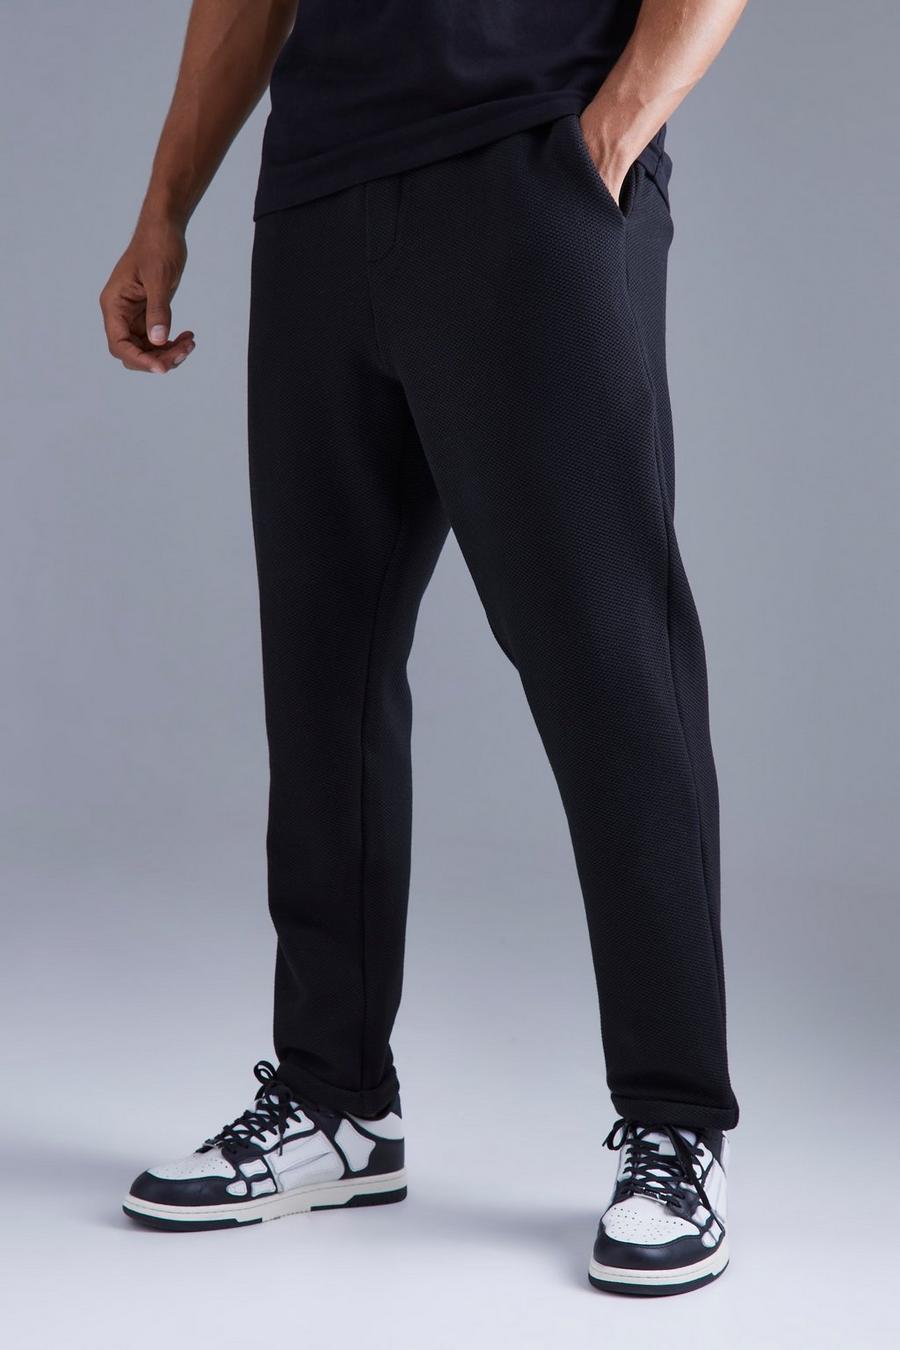 Pantalón texturizado elegante ajustado elástico, Black